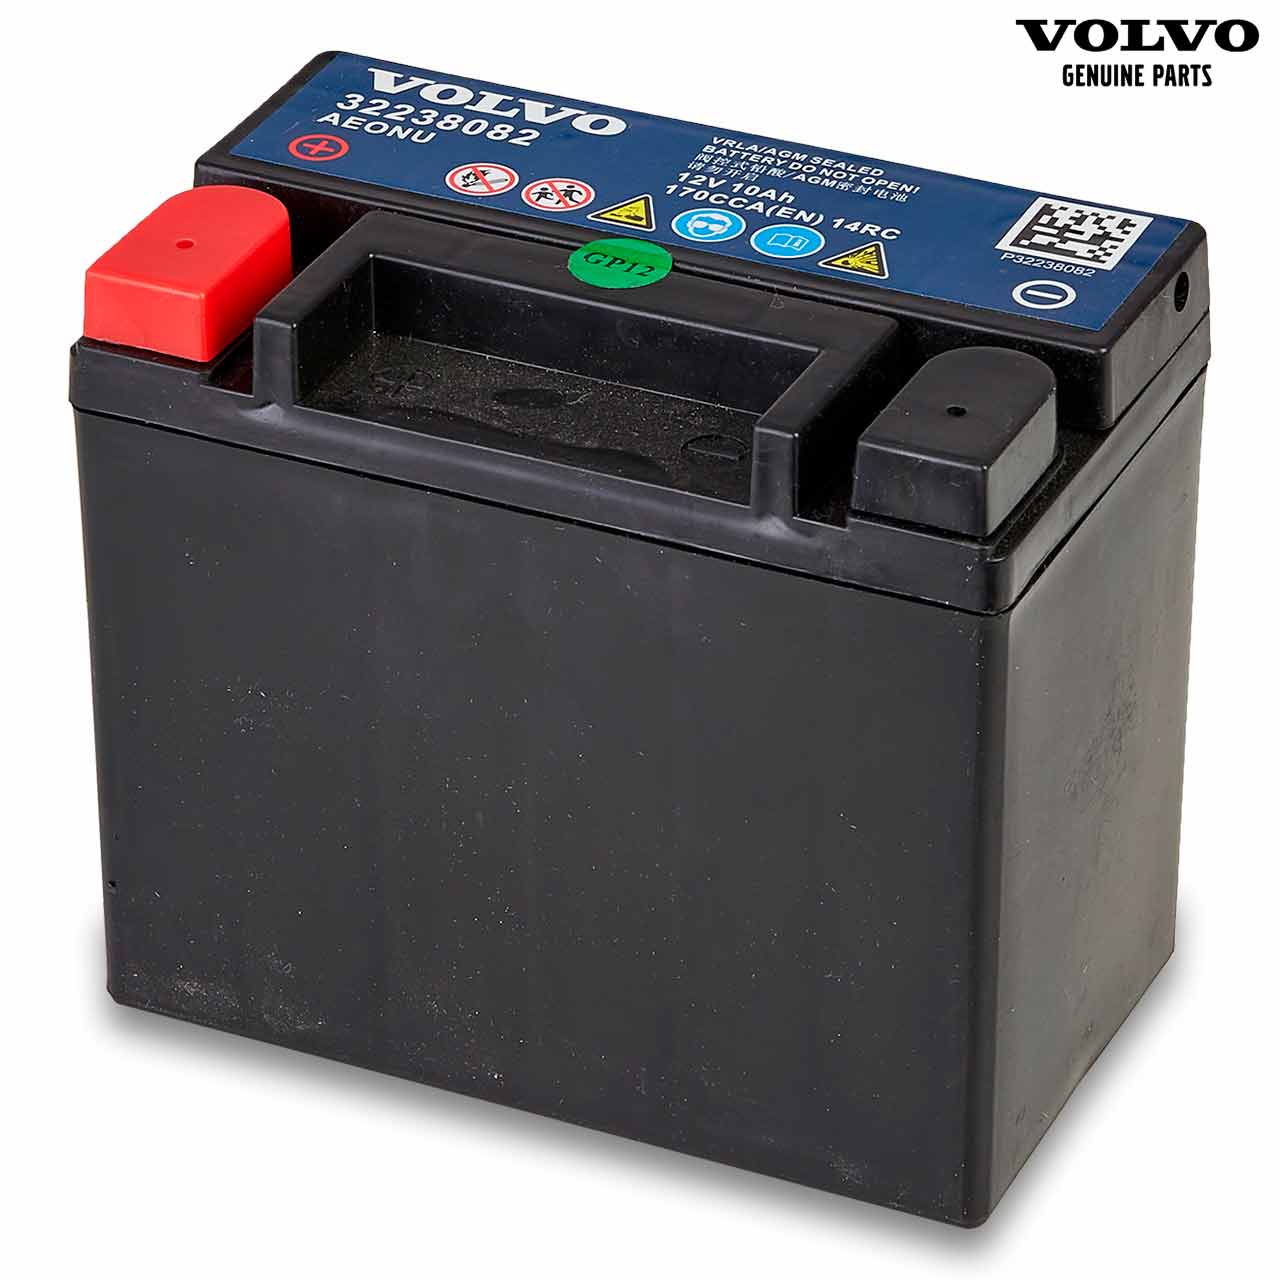 Original Volvo Hilfsbatterie 12V 10Ah - Grünzweig Online-Shop